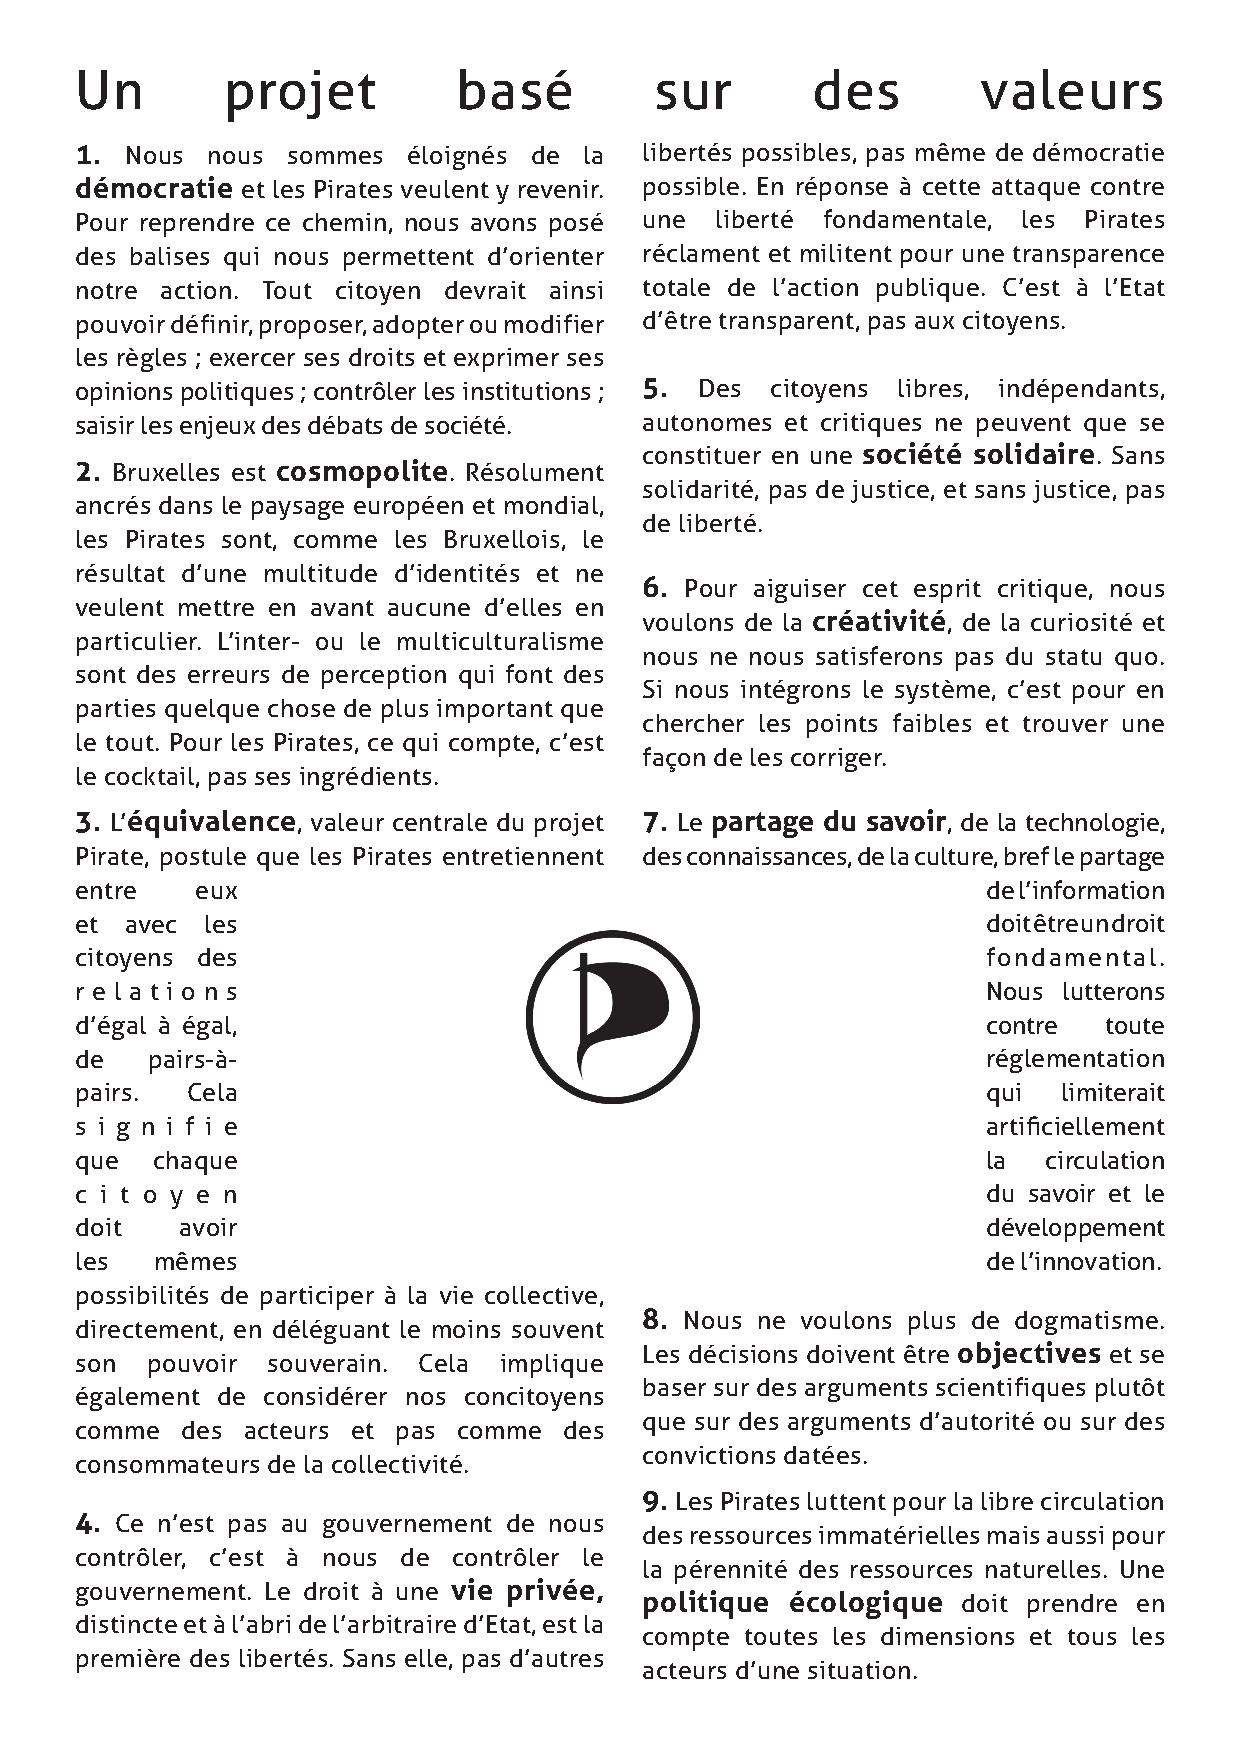 PirateBoat-bxl v2.pdf